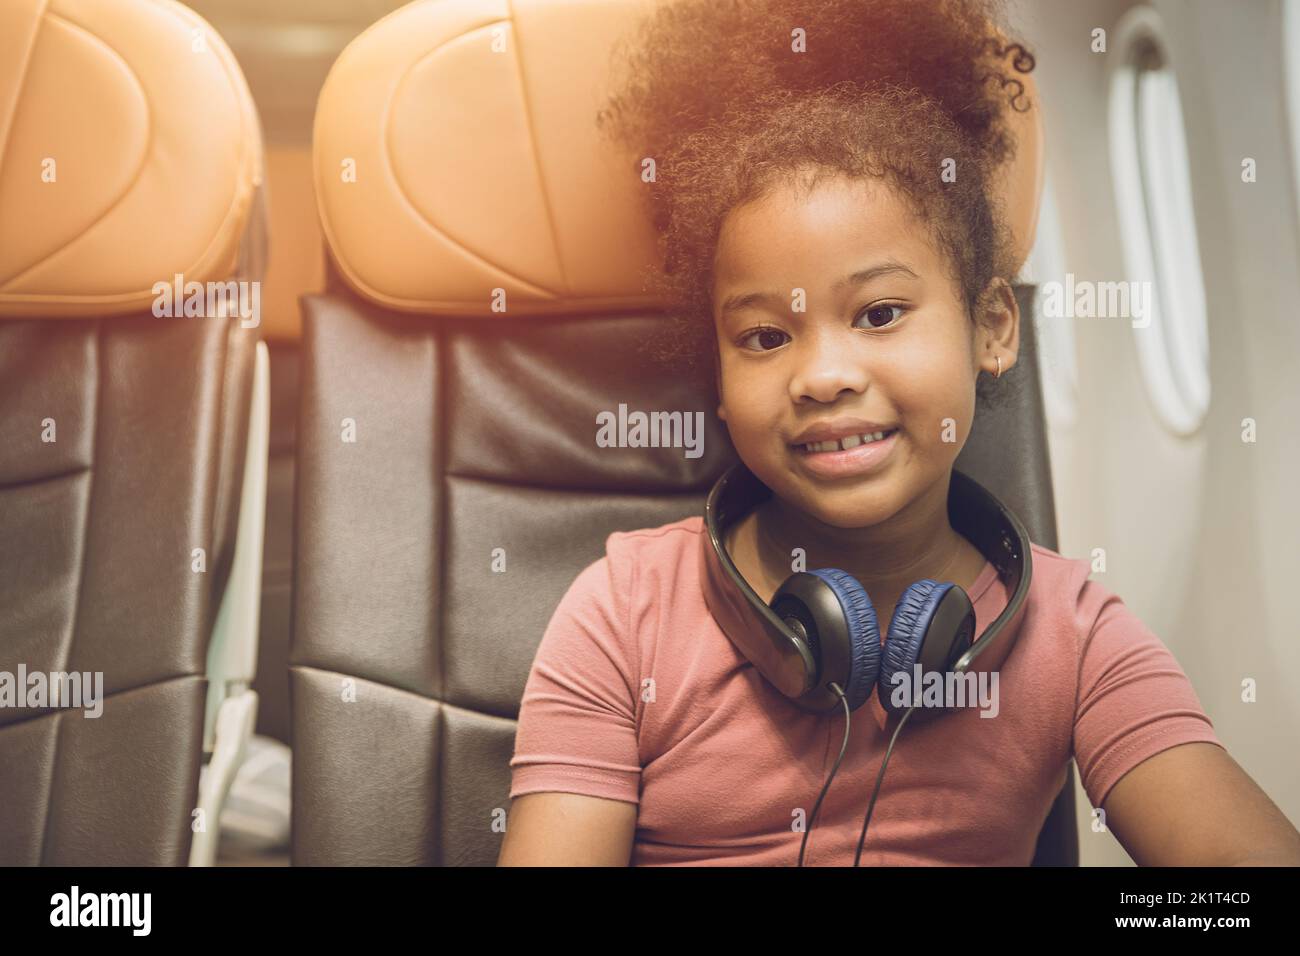 niños que viajan solos o sin acompañante. niño niña volar viaje sentado solo en el asiento de cabina de vuelo sonrisa feliz. Foto de stock